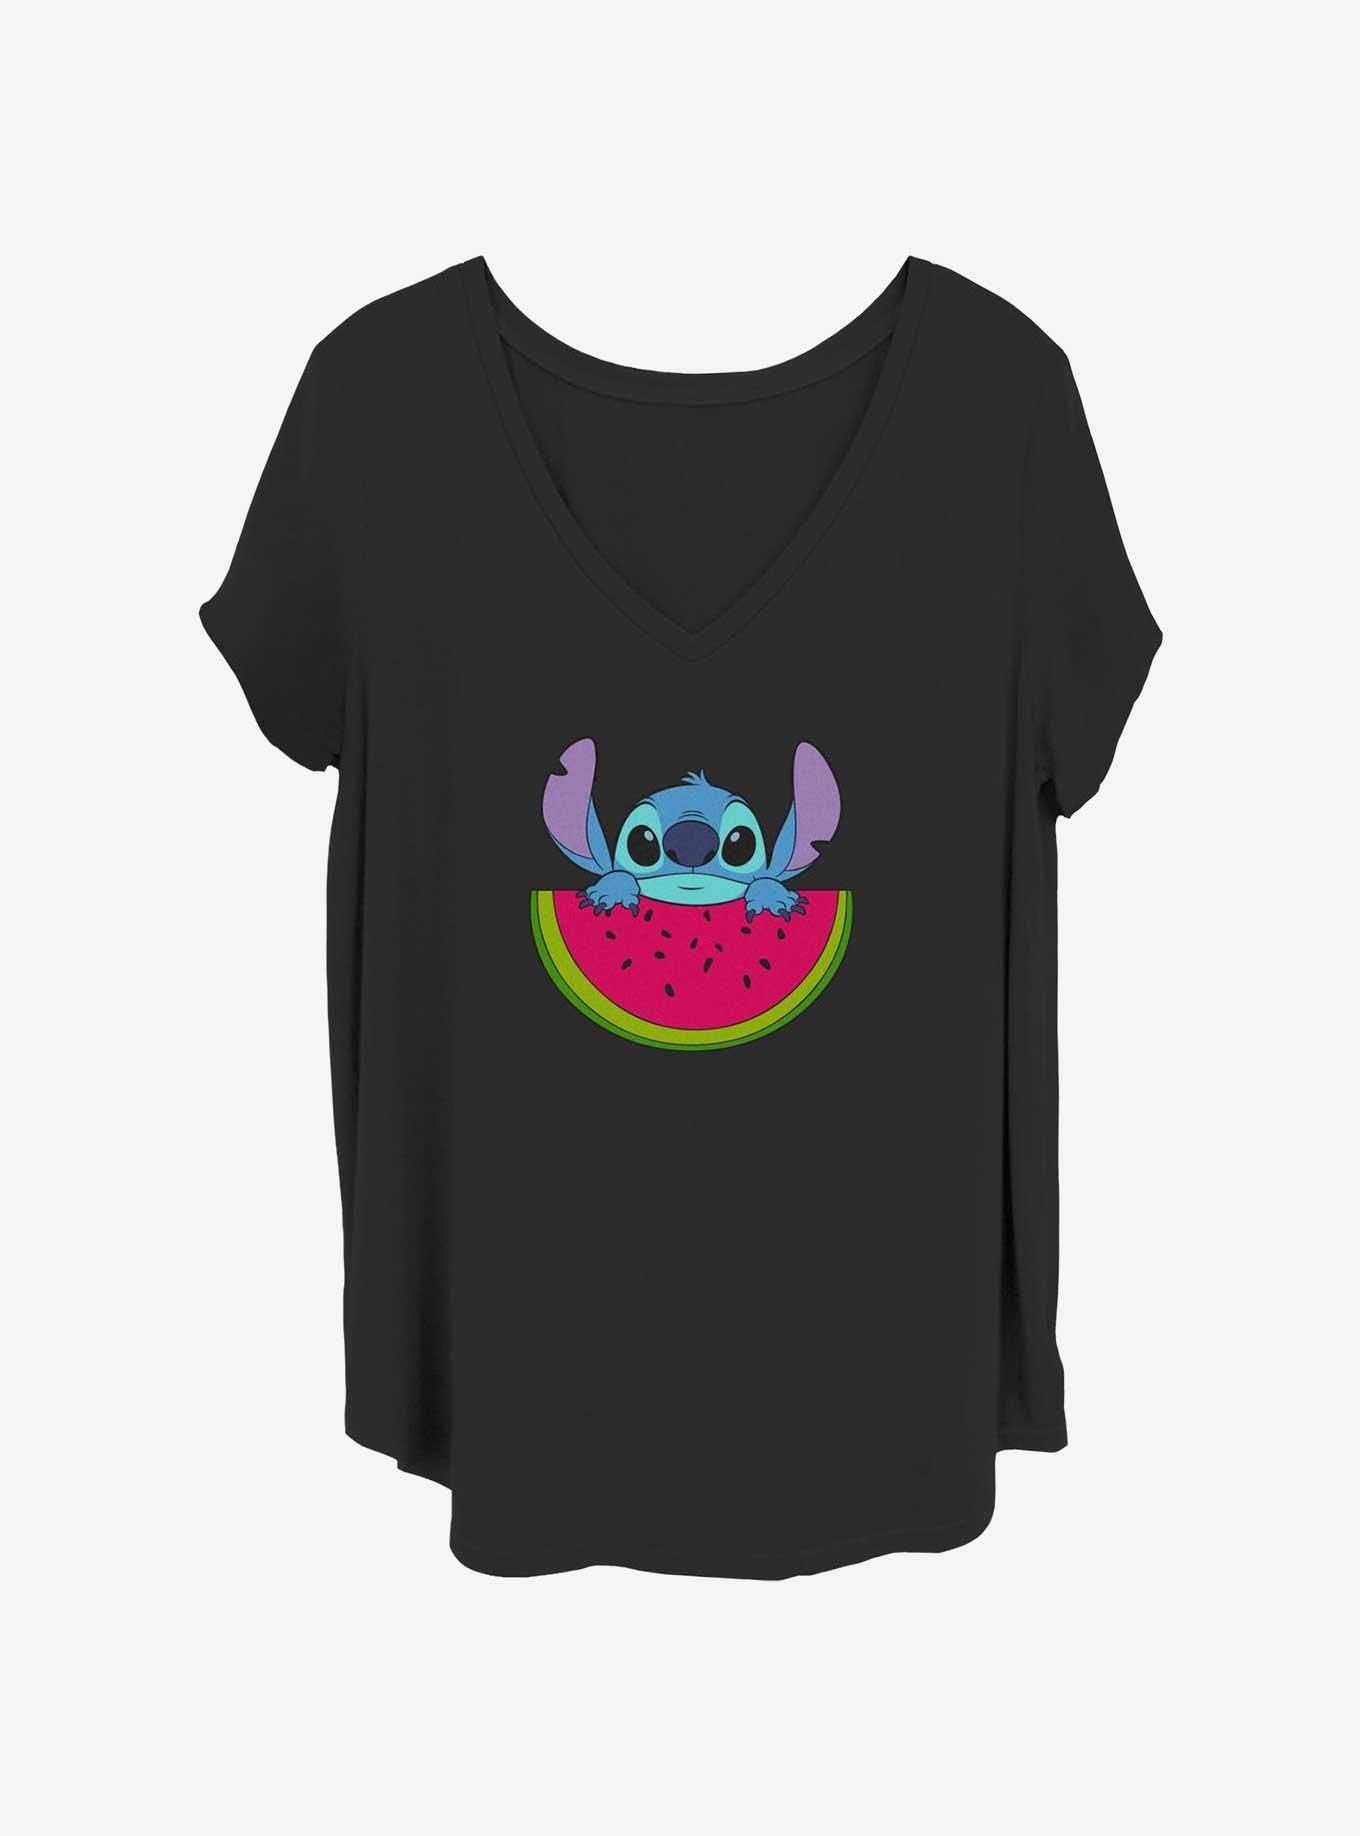 Disney Lilo & Stitch Watermelon Girls T-Shirt Plus